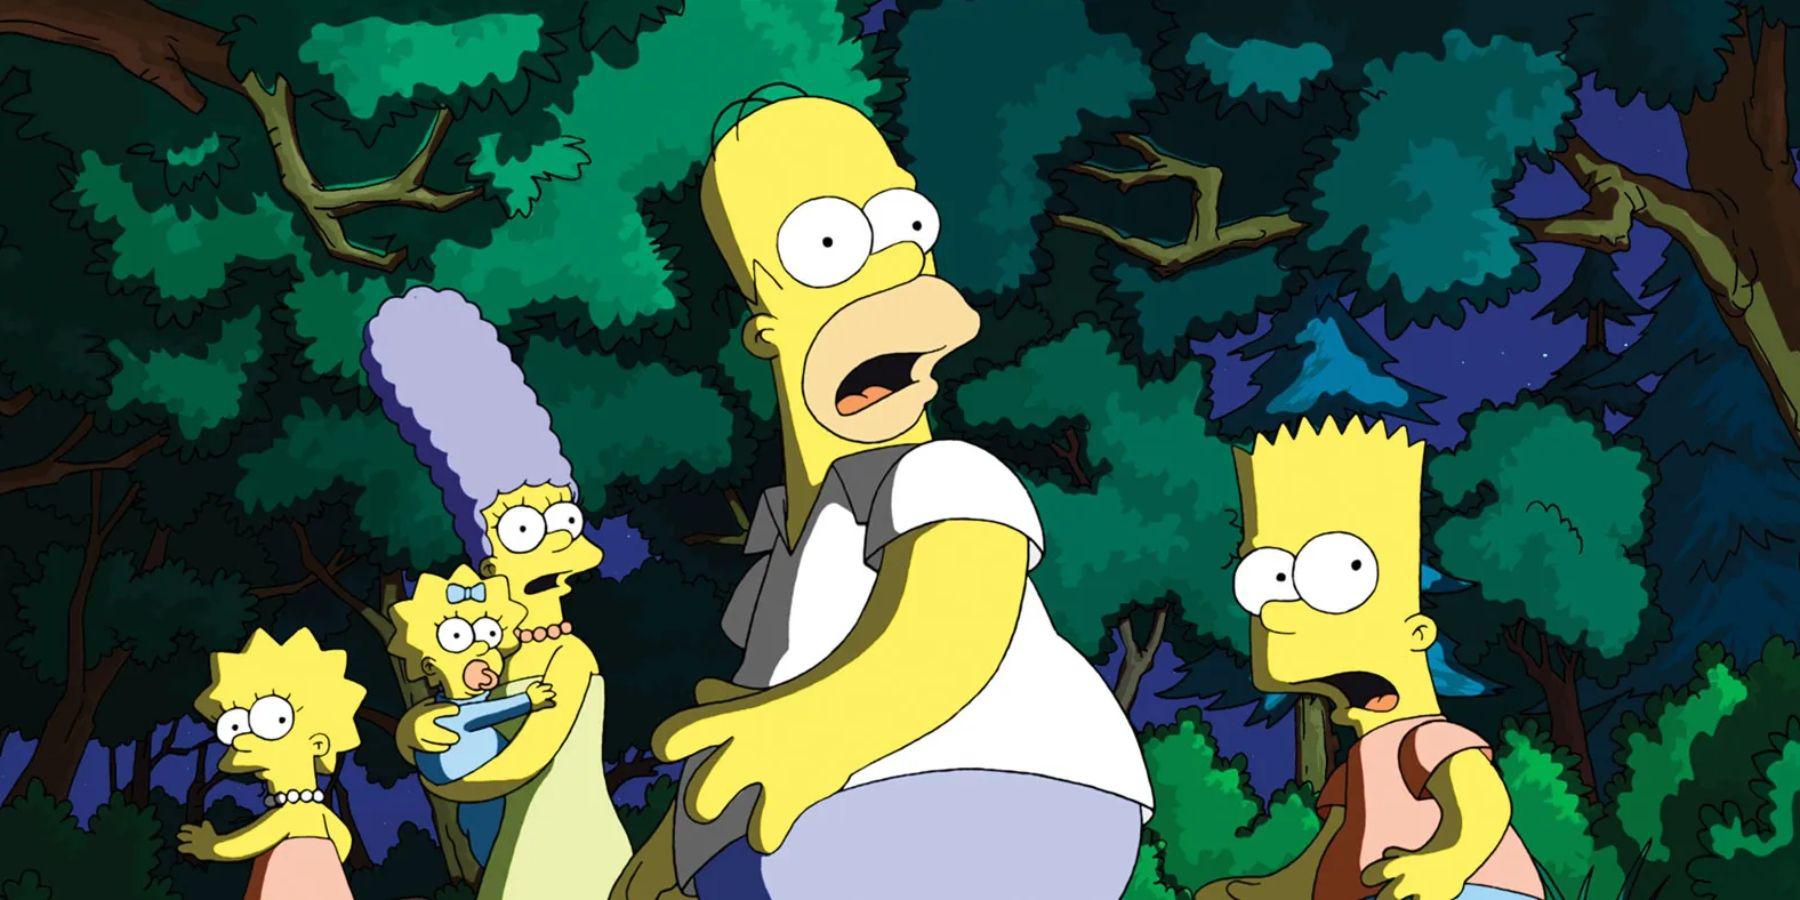 Os Simpsons, Family Guy e Bob's Burgers chegaram para ficar após a renovação por mais 2 temporadas